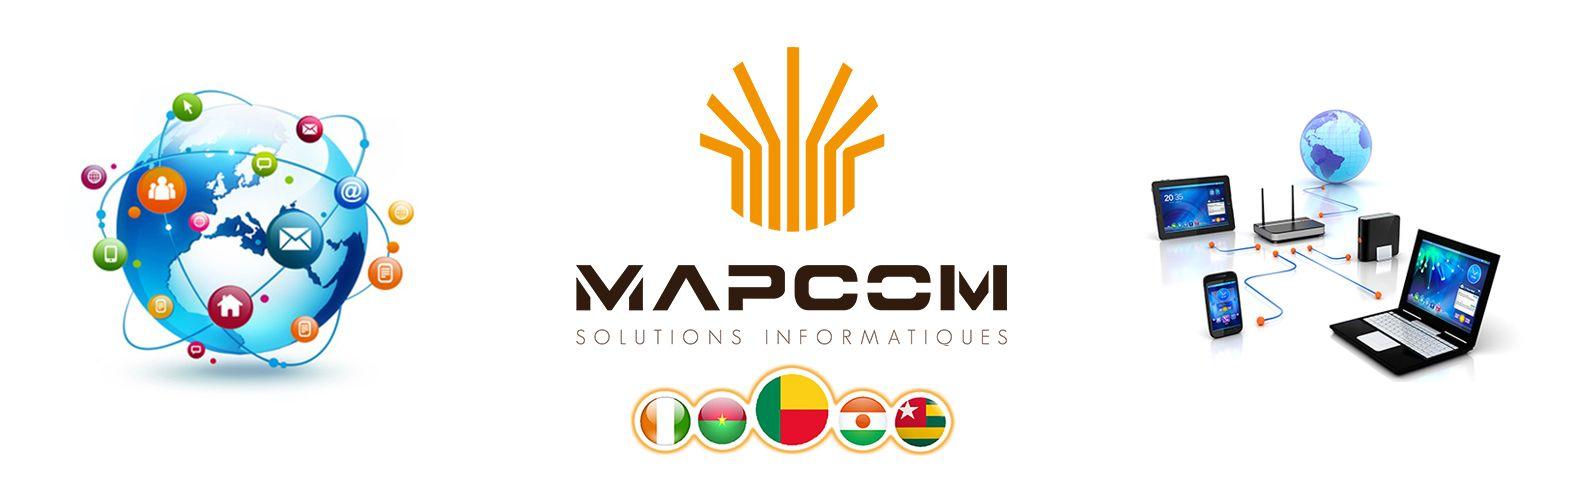 Mapcom Logo - Mapcom - Solutions Informatiques